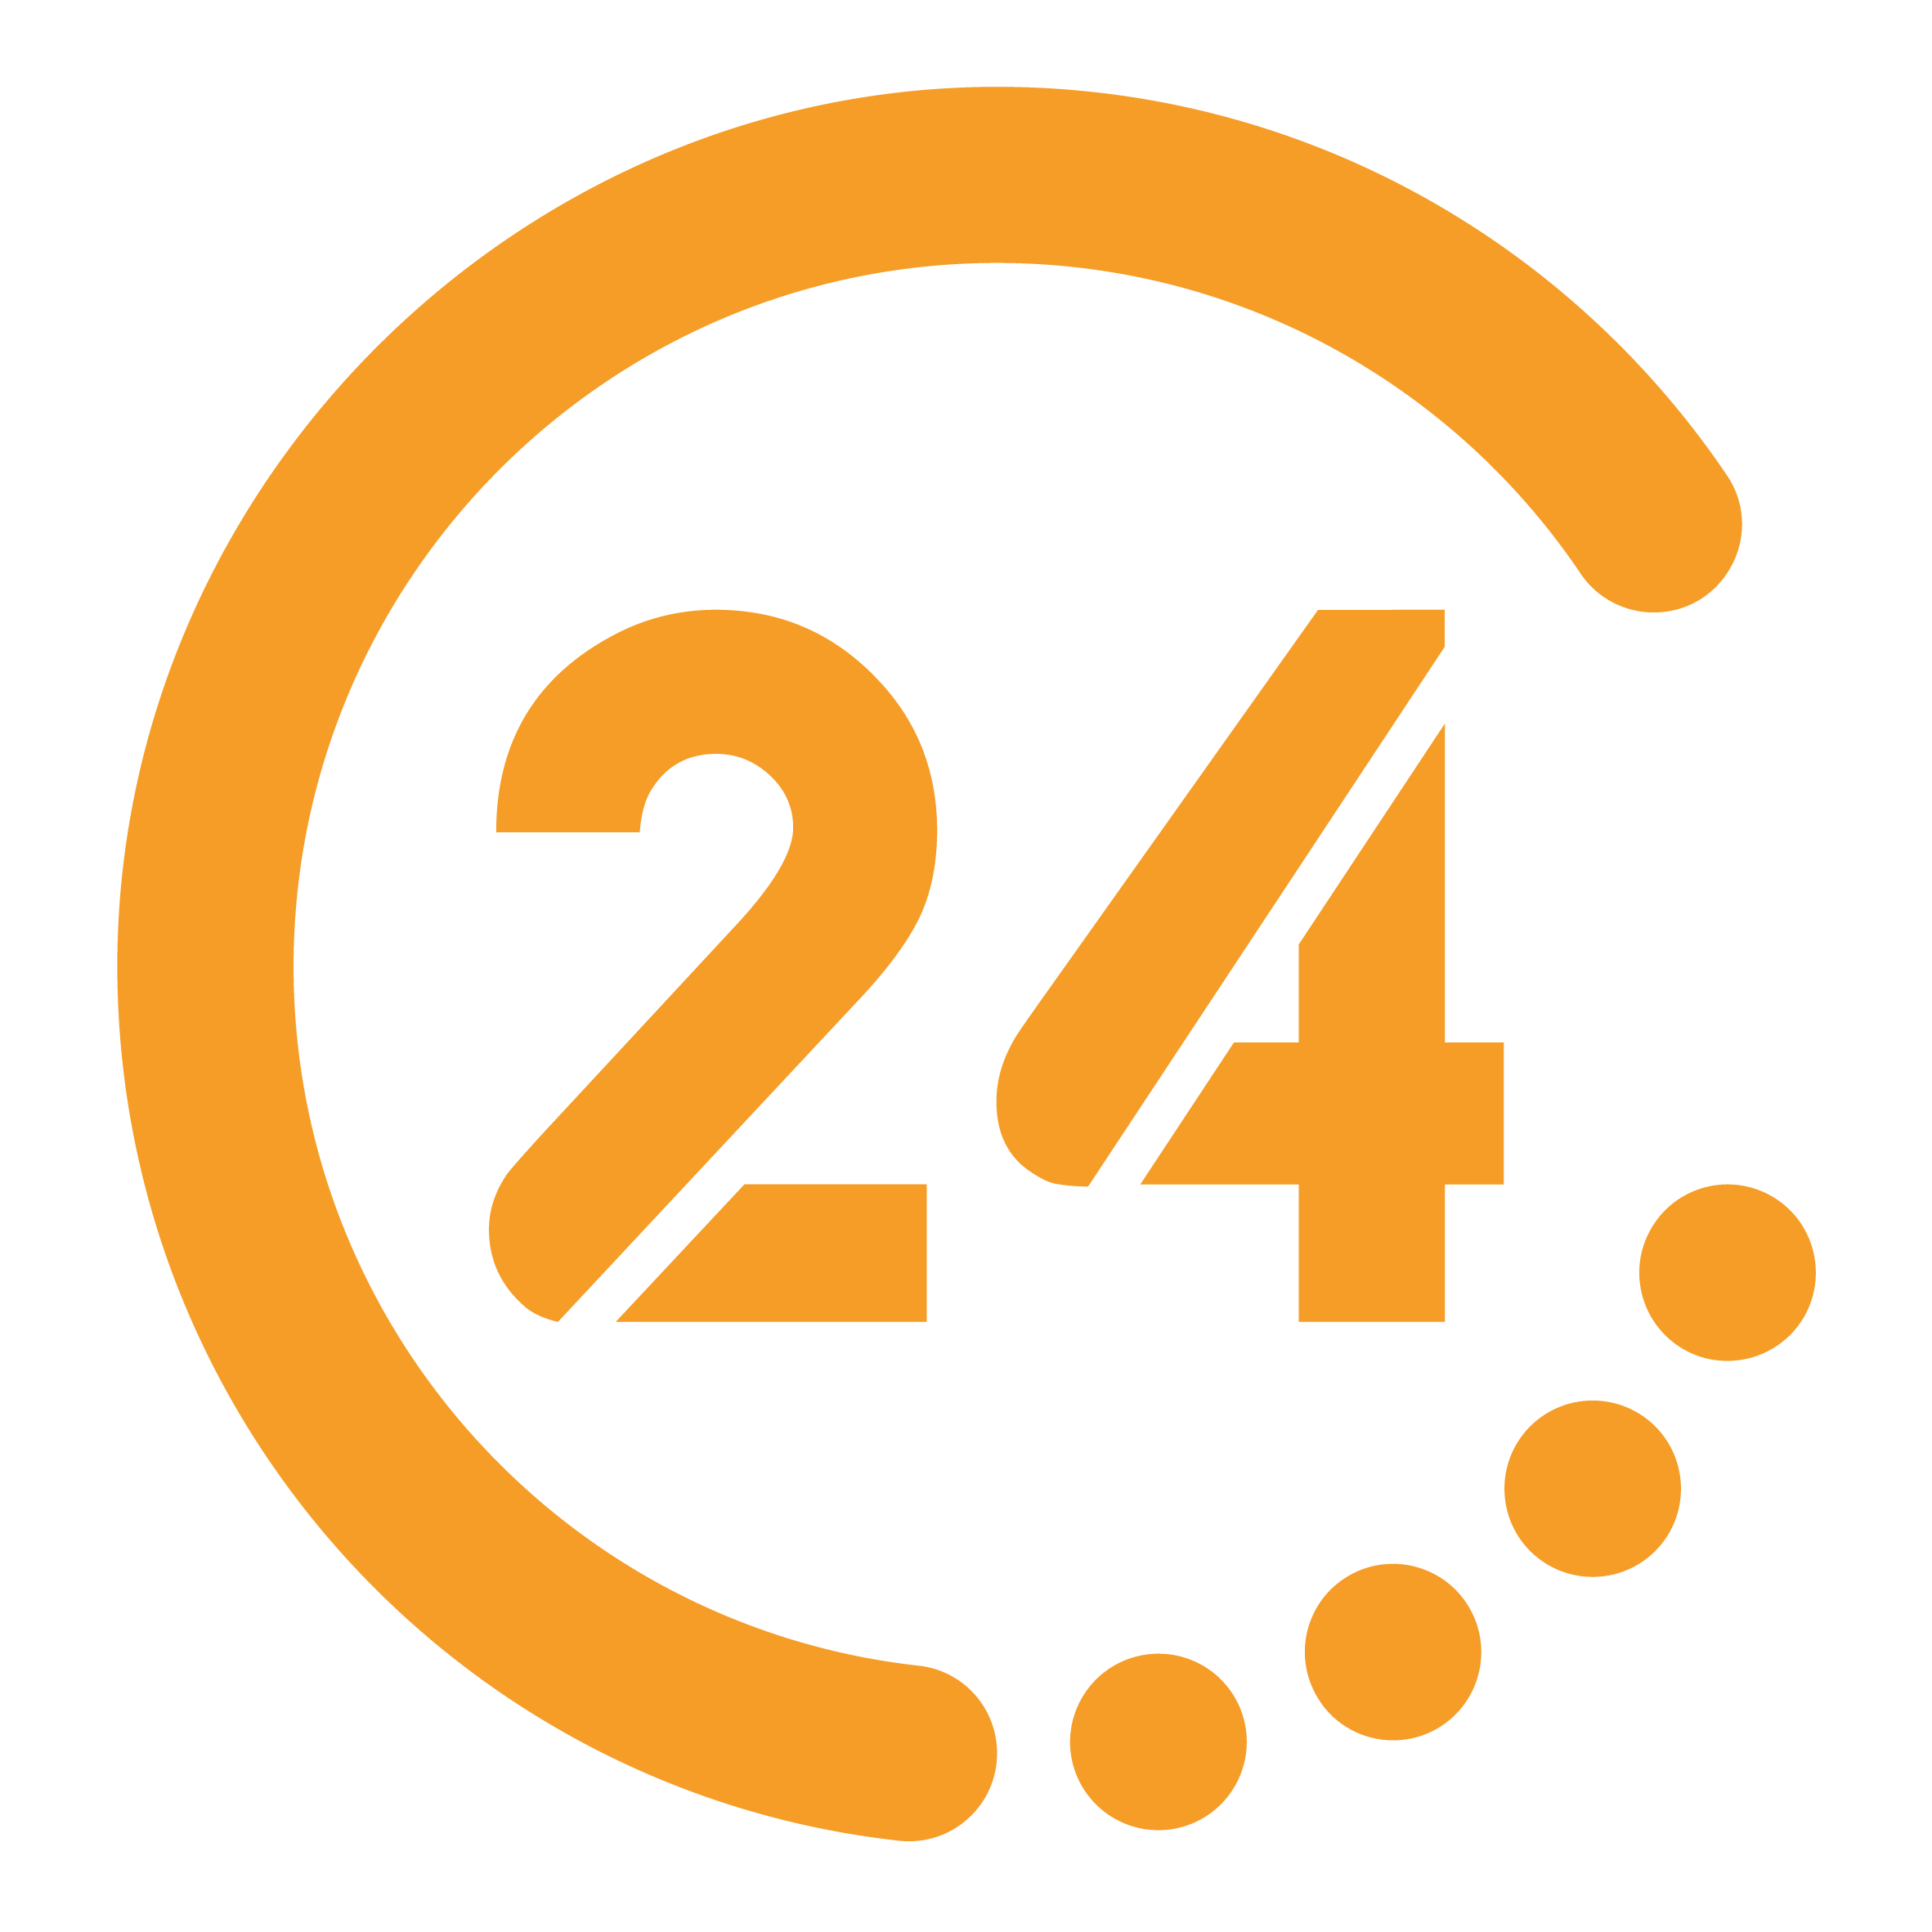 Канал 24 ч. 24tv. Логотип 24 часа. 24 ТВ логотип. 24tv logo.